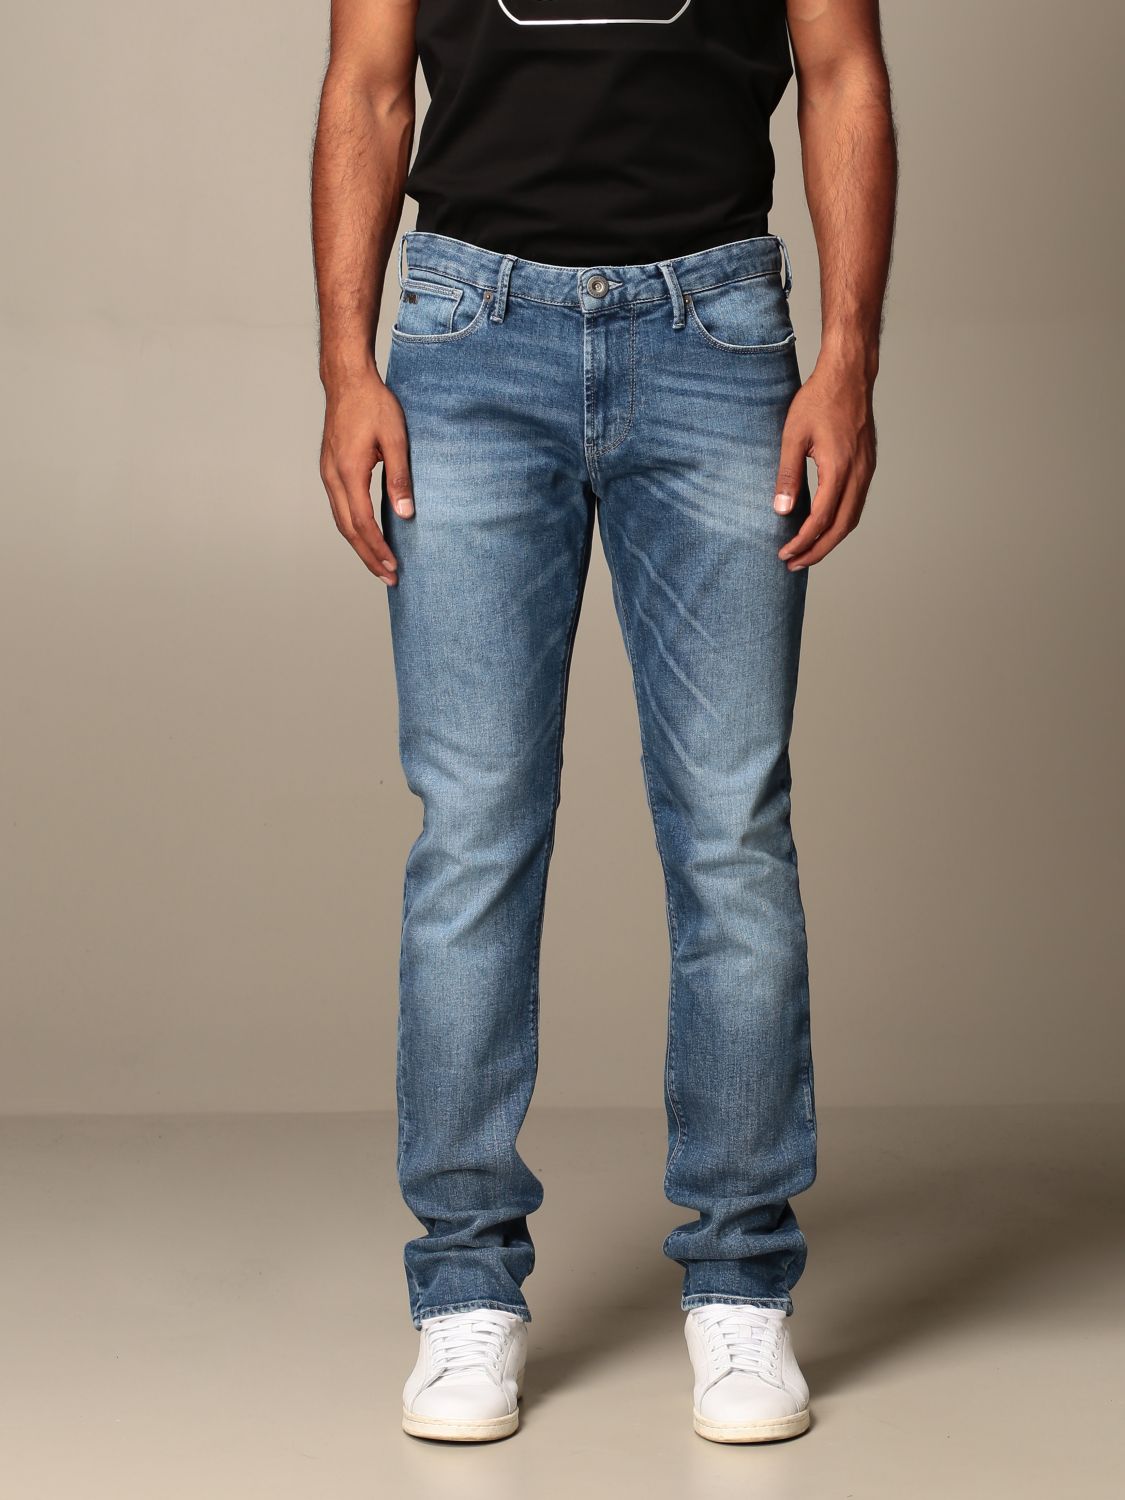 Emporio Armani jeans in used stretch denim | Jeans Emporio Armani Men ...